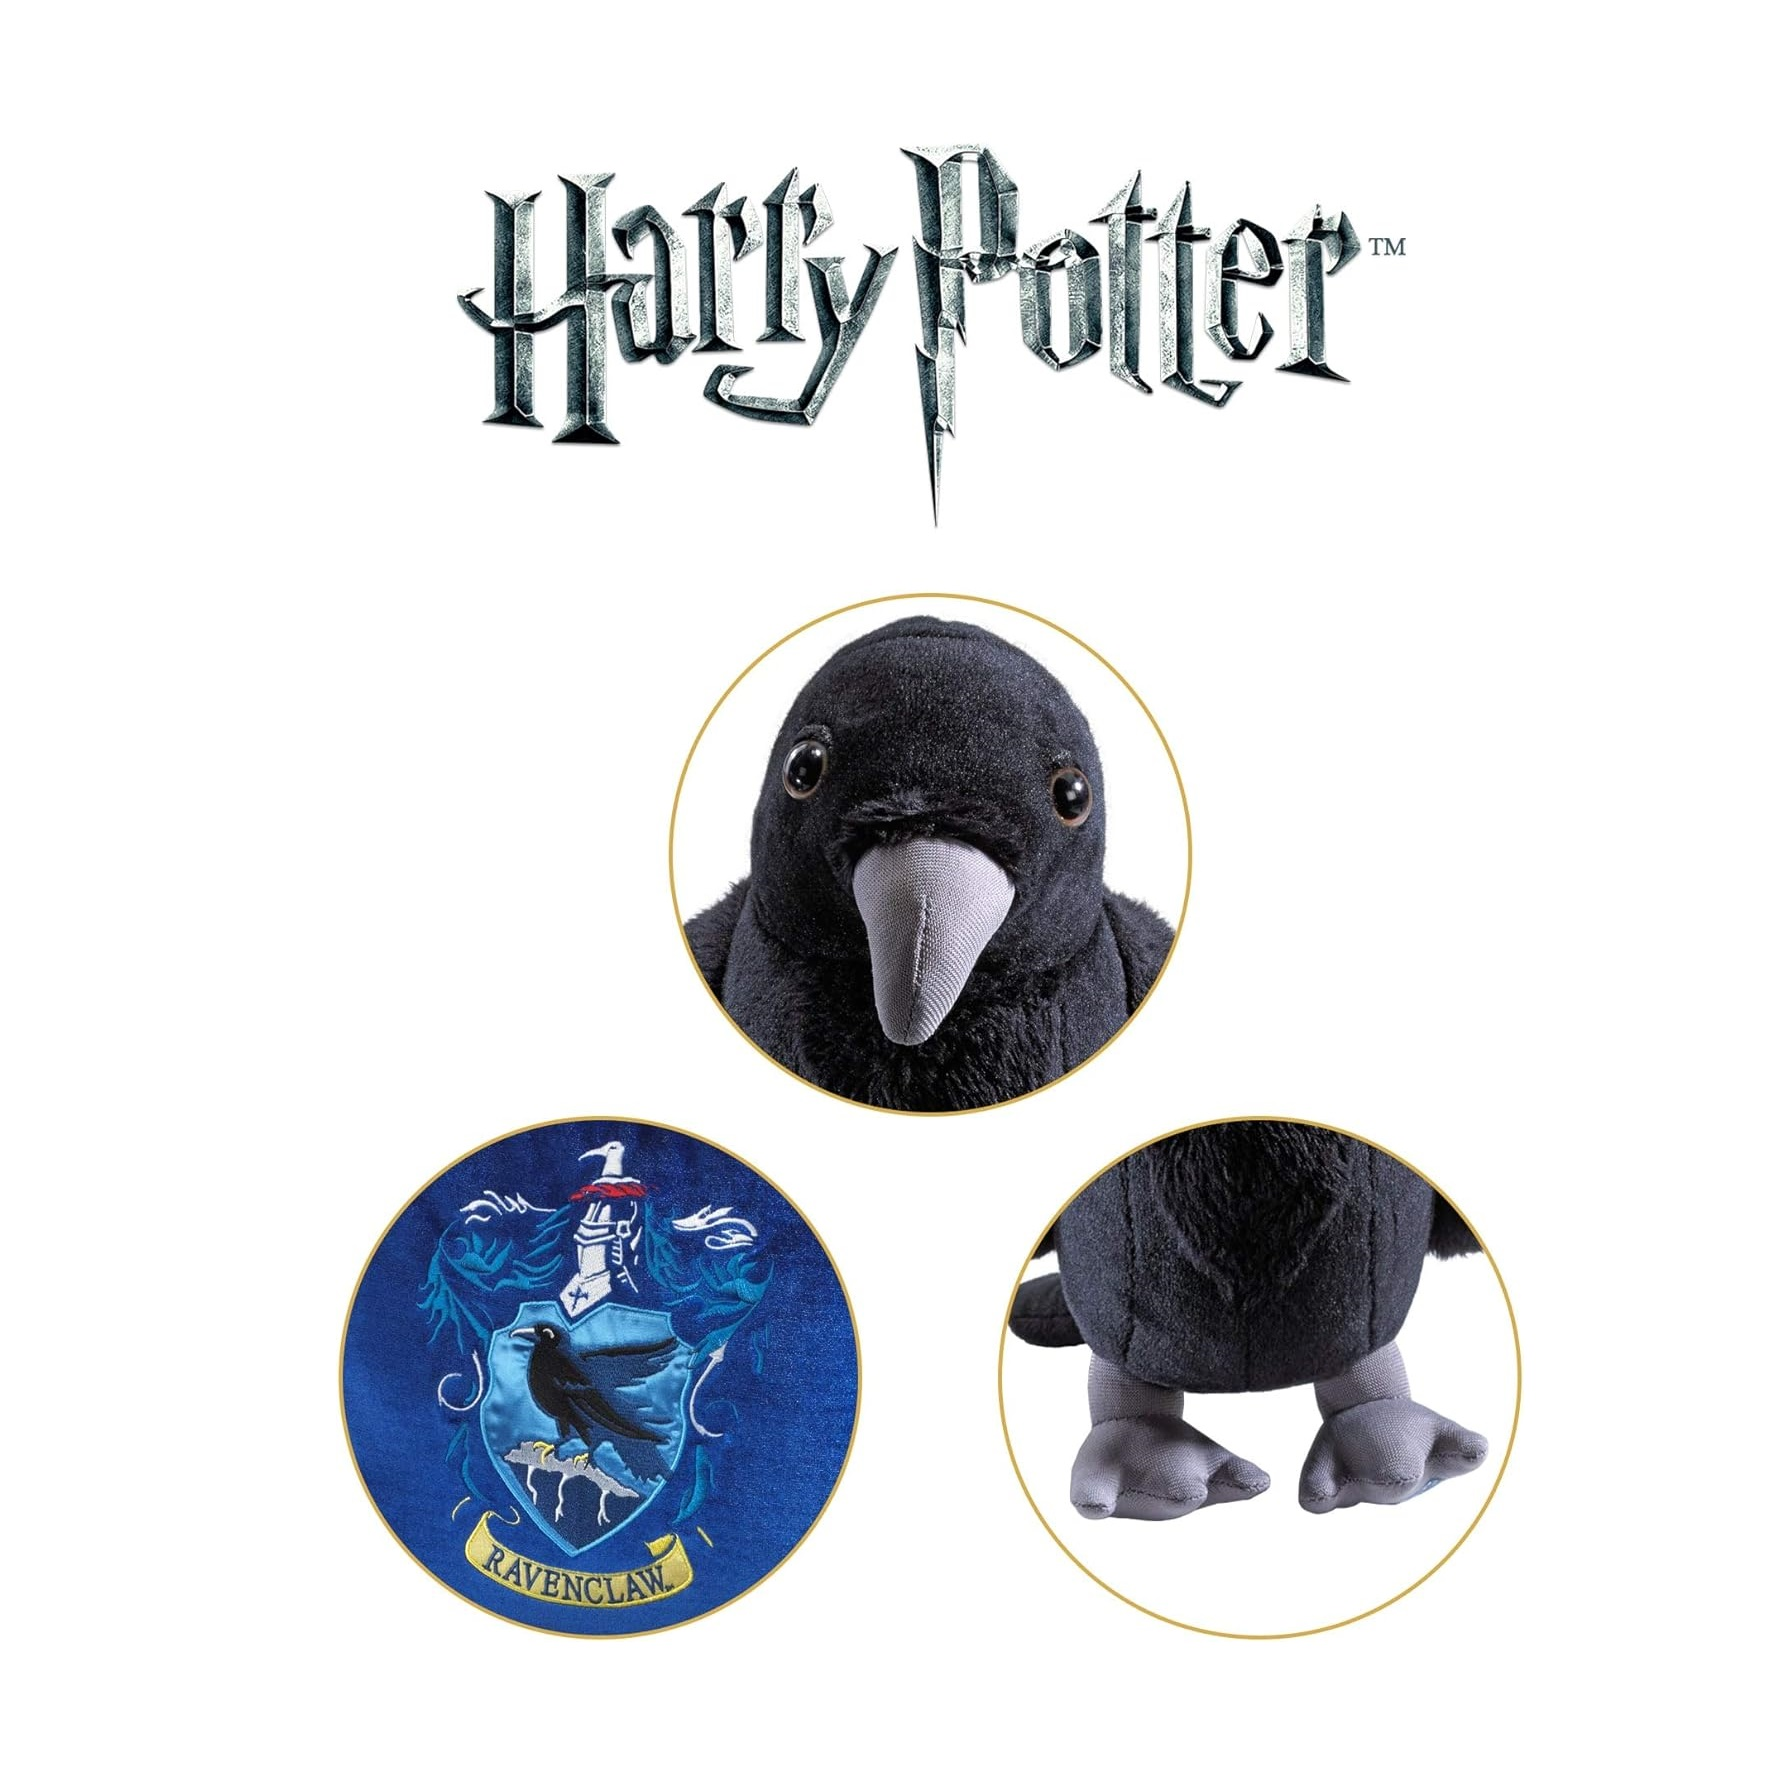 House mit NOBLE Potter COLLECTION Harry Mascot Plüschfigur Ravenclaw Kissen Plüschfigur bunt